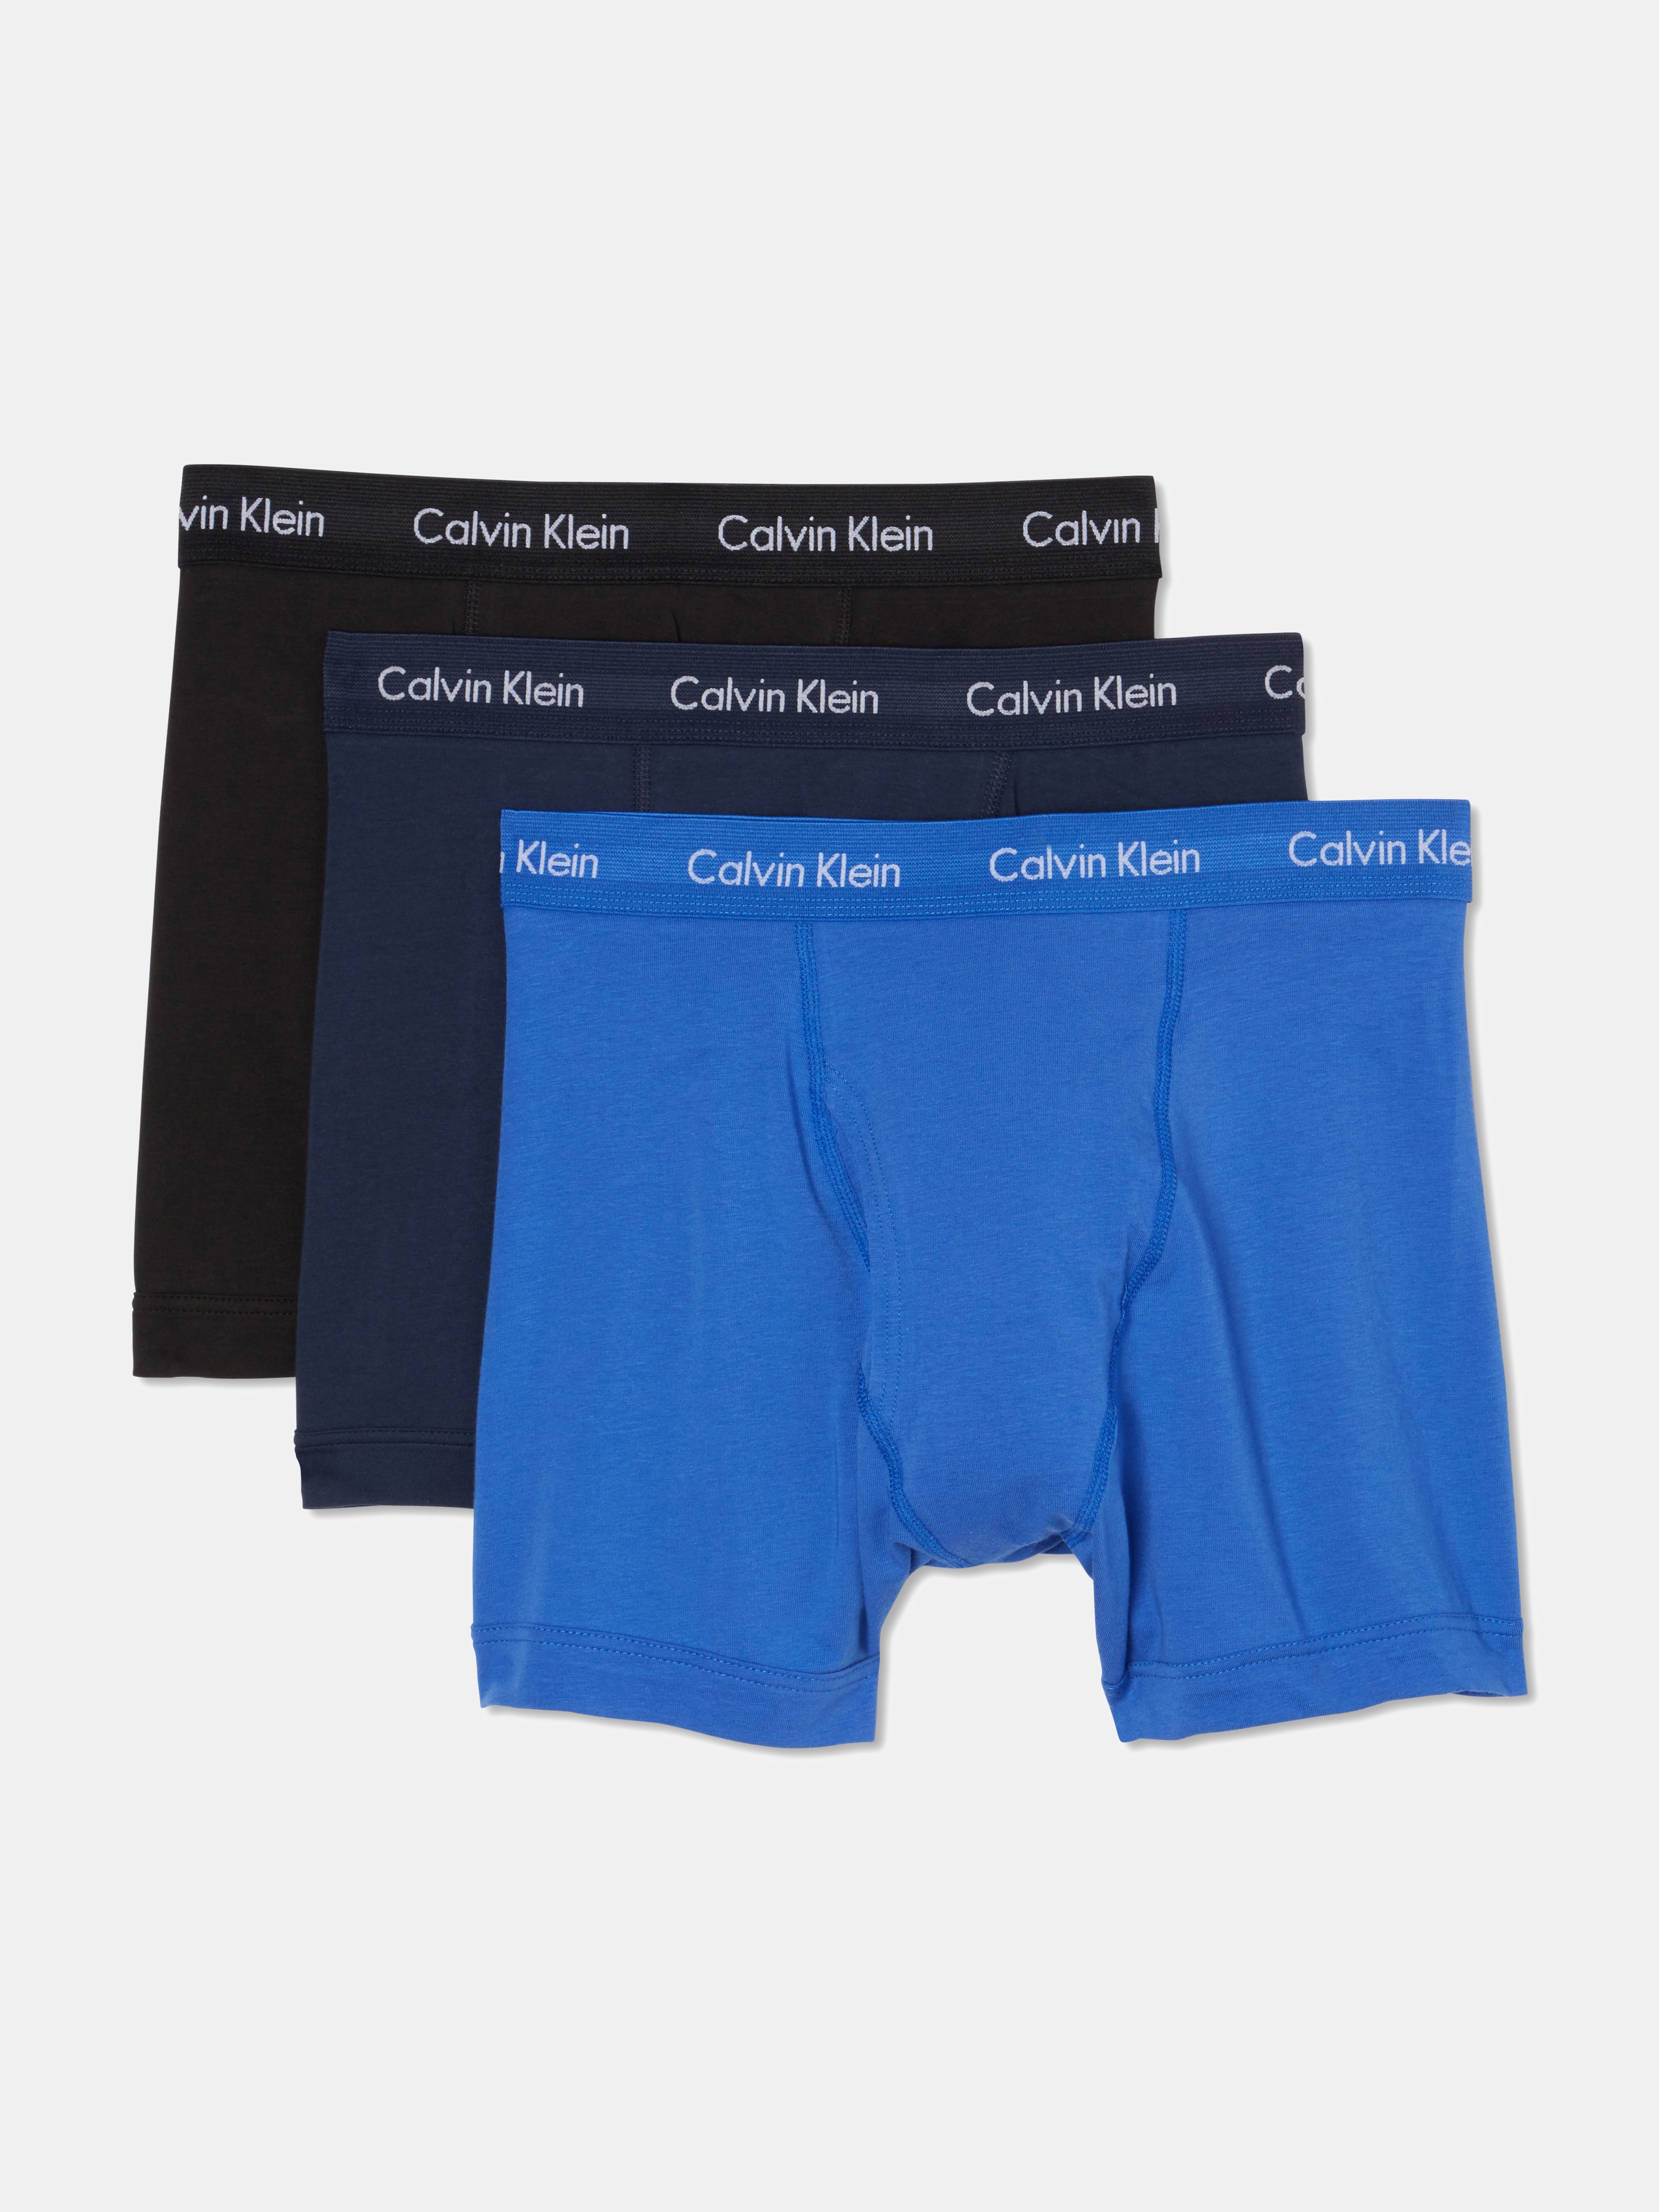 calvin klein underwear blue